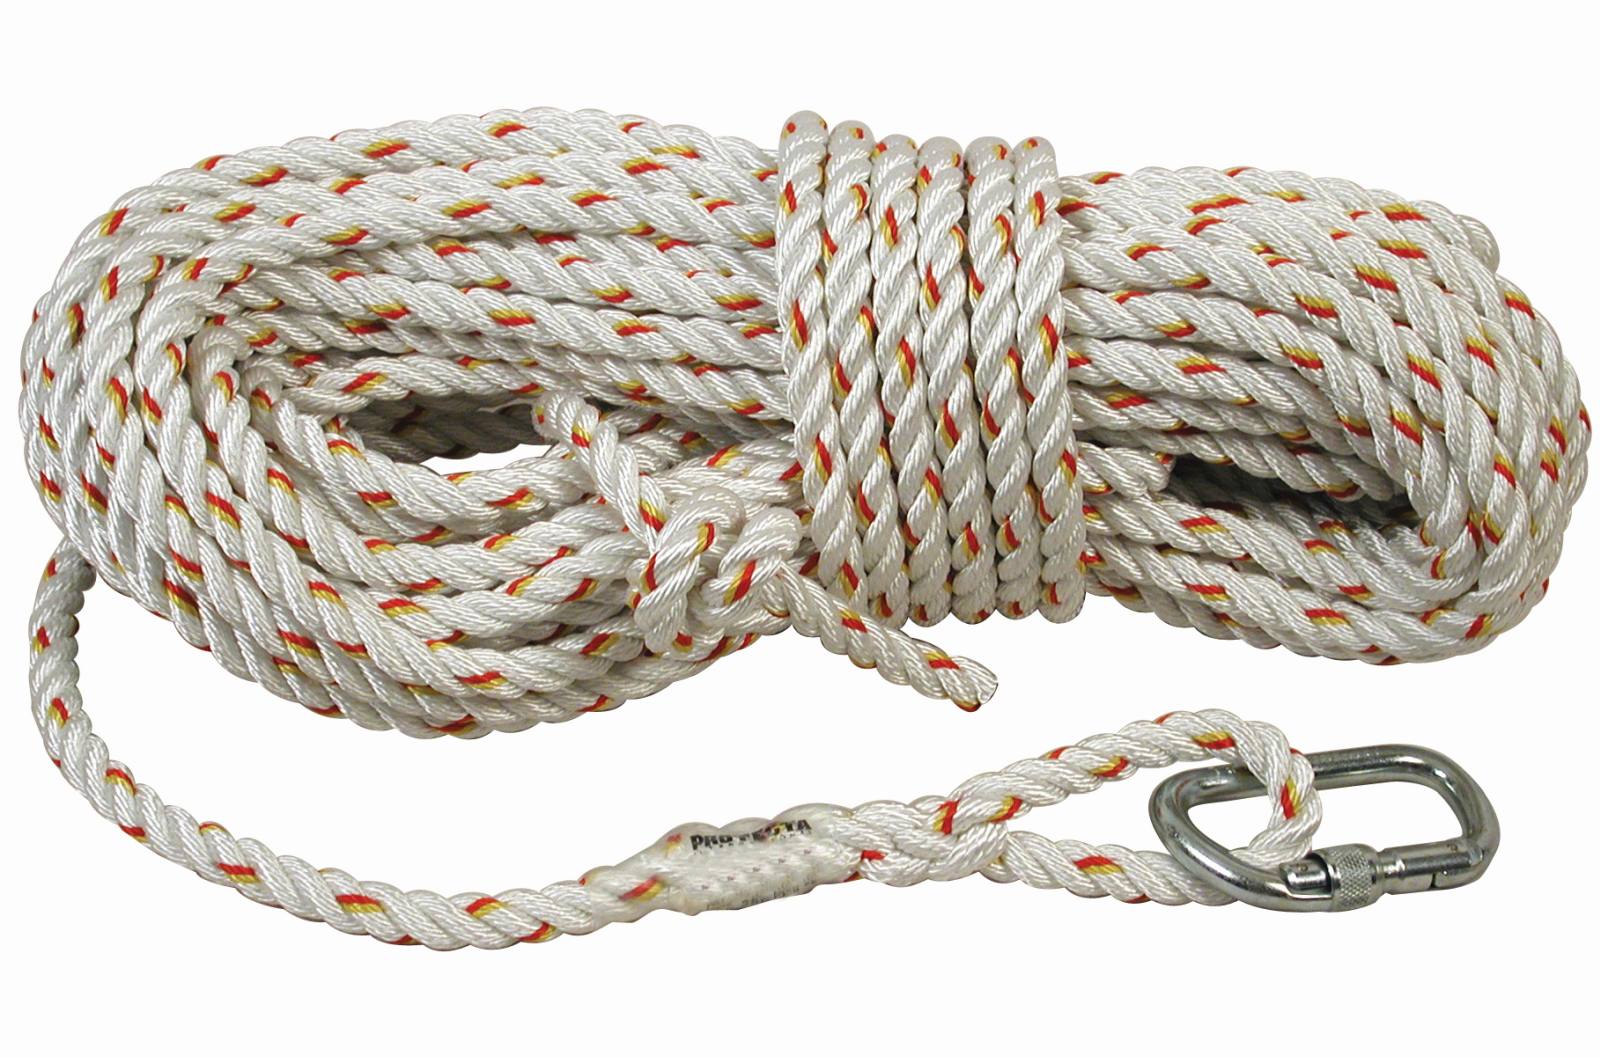 3M PROTECTA Seil für mitlaufendes Auffanggerät Cobra, Länge: 10 m, gedrehtes Seil 14 mm , AJ501 Karabiner Öffnungsweite 17 mm, 10,0 m